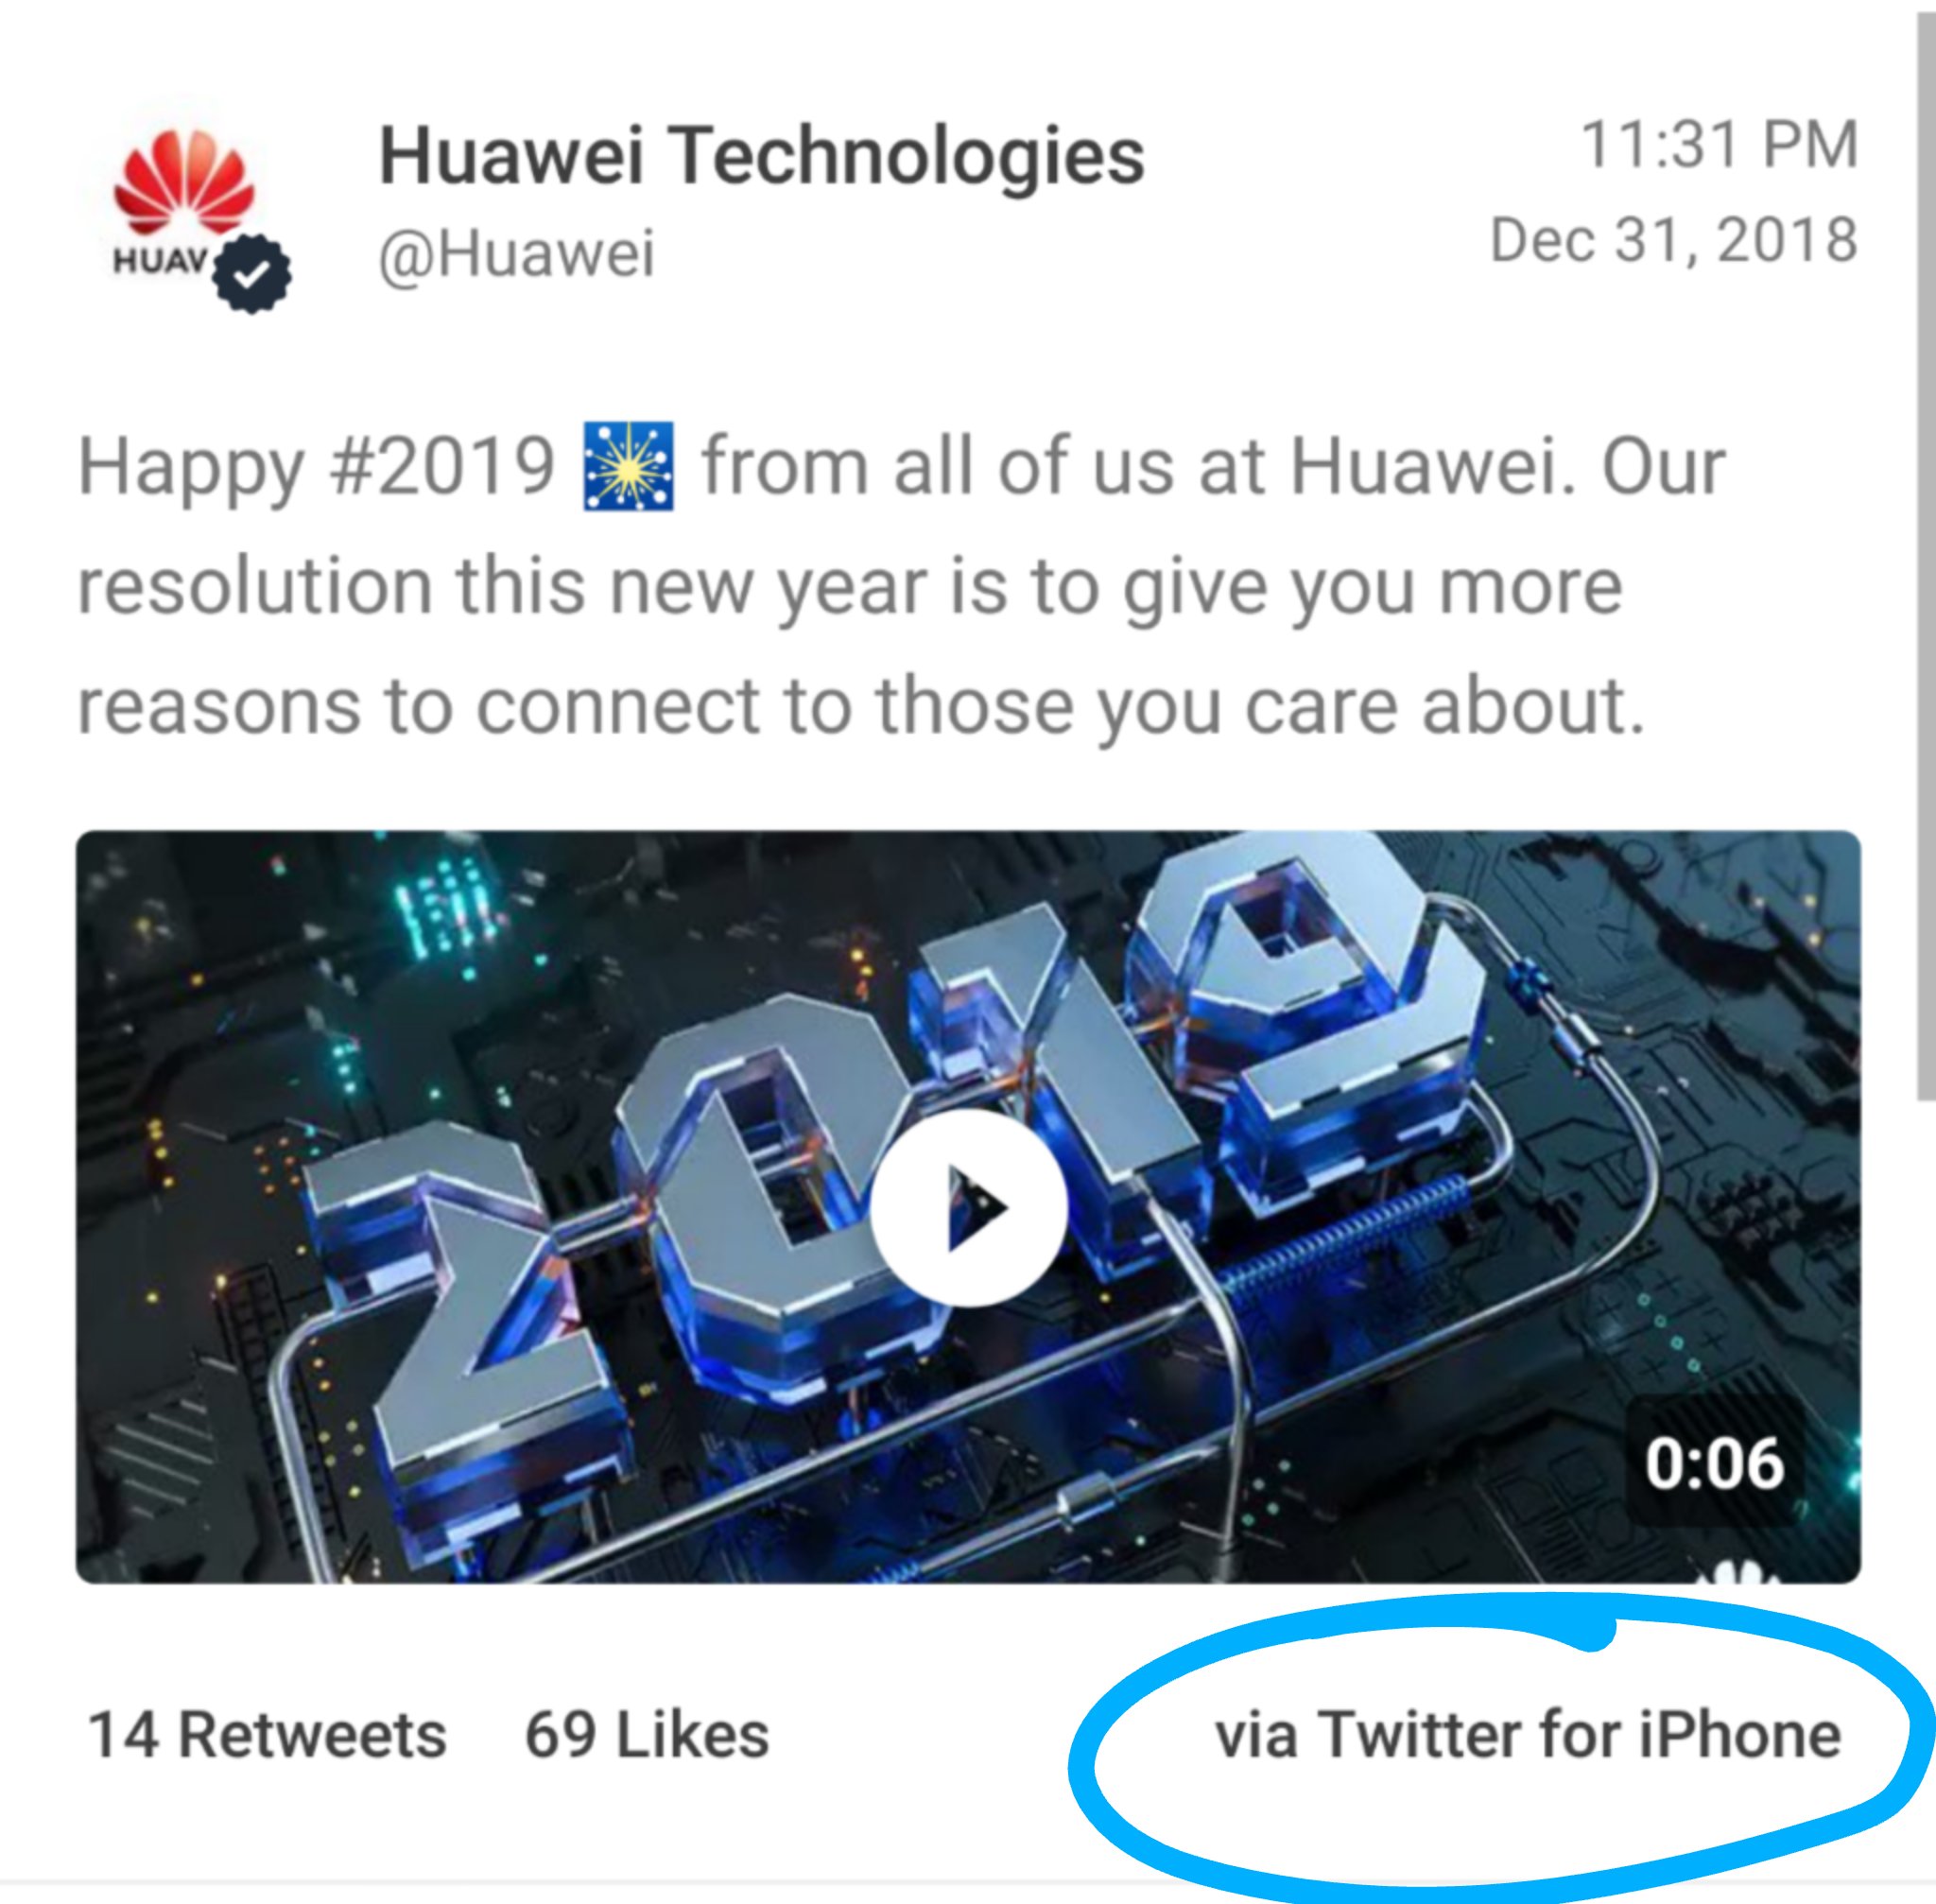 Za Chyby Se Plati Huawei Potrestal Zamestnance Kteri Napsali Novorocni Prani Na Twitter Z Iphonu Letem Svetem Applem